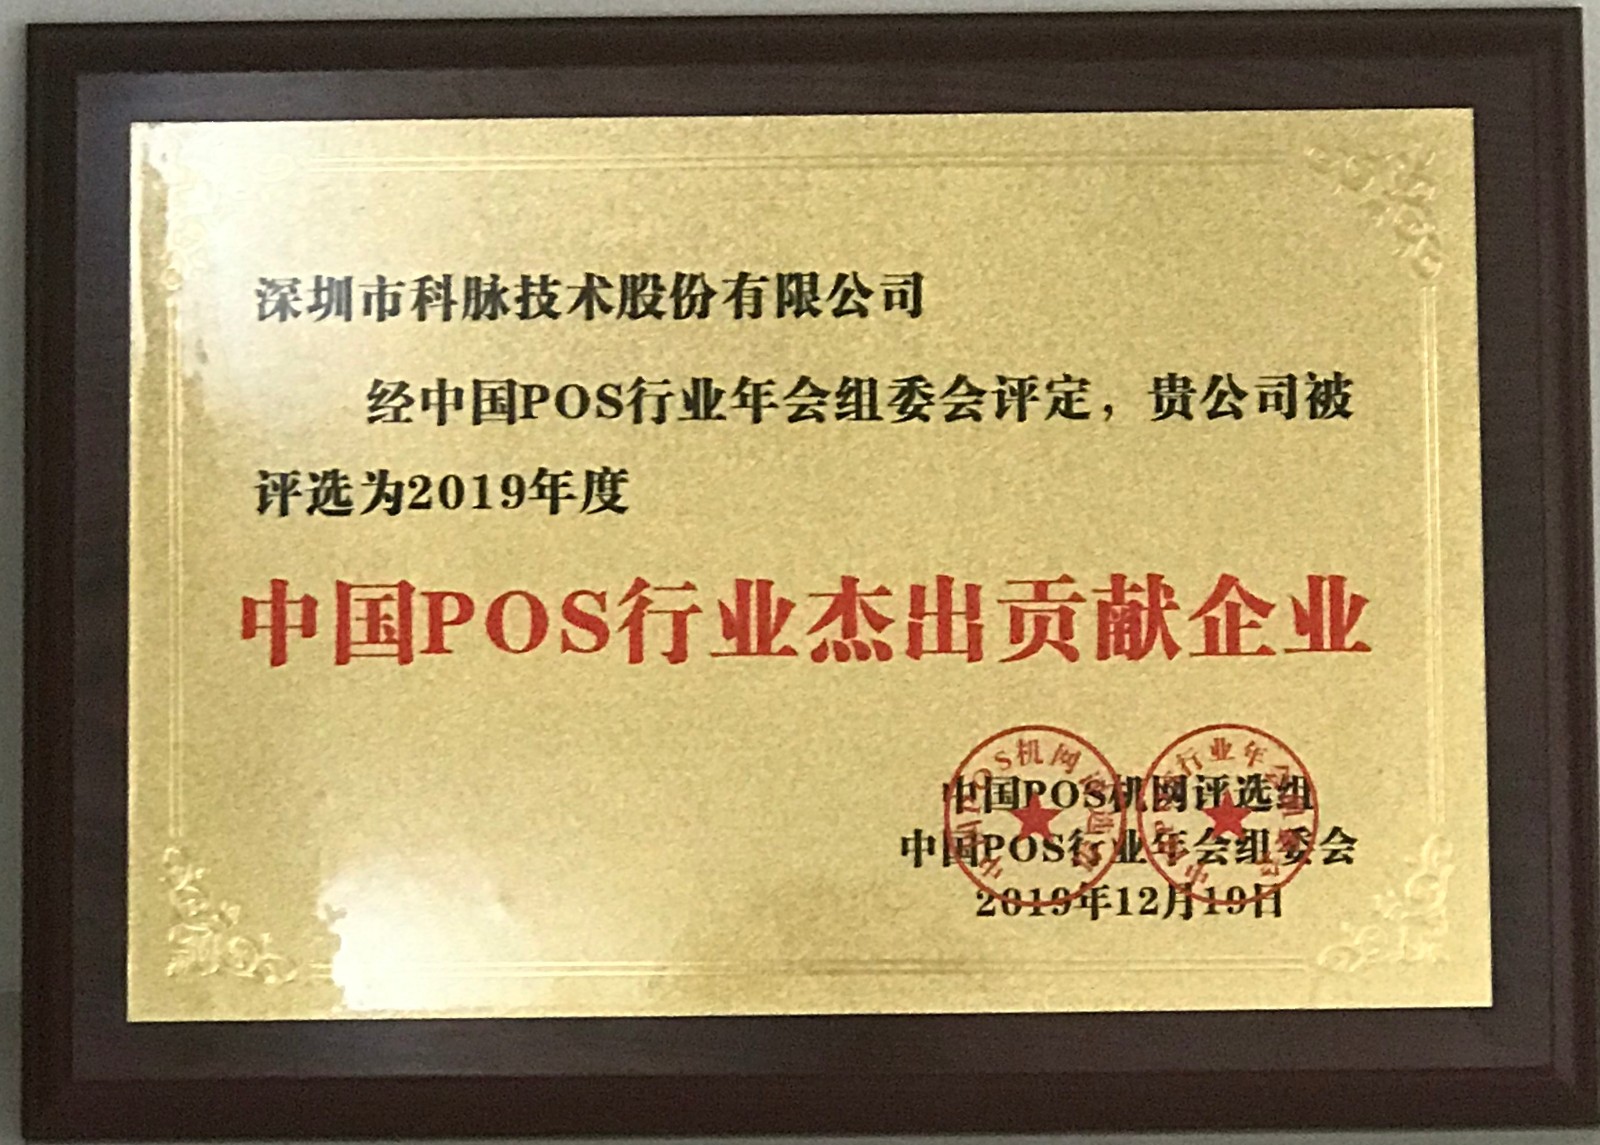 科脉被评为“中国pos行业杰出贡献企业”